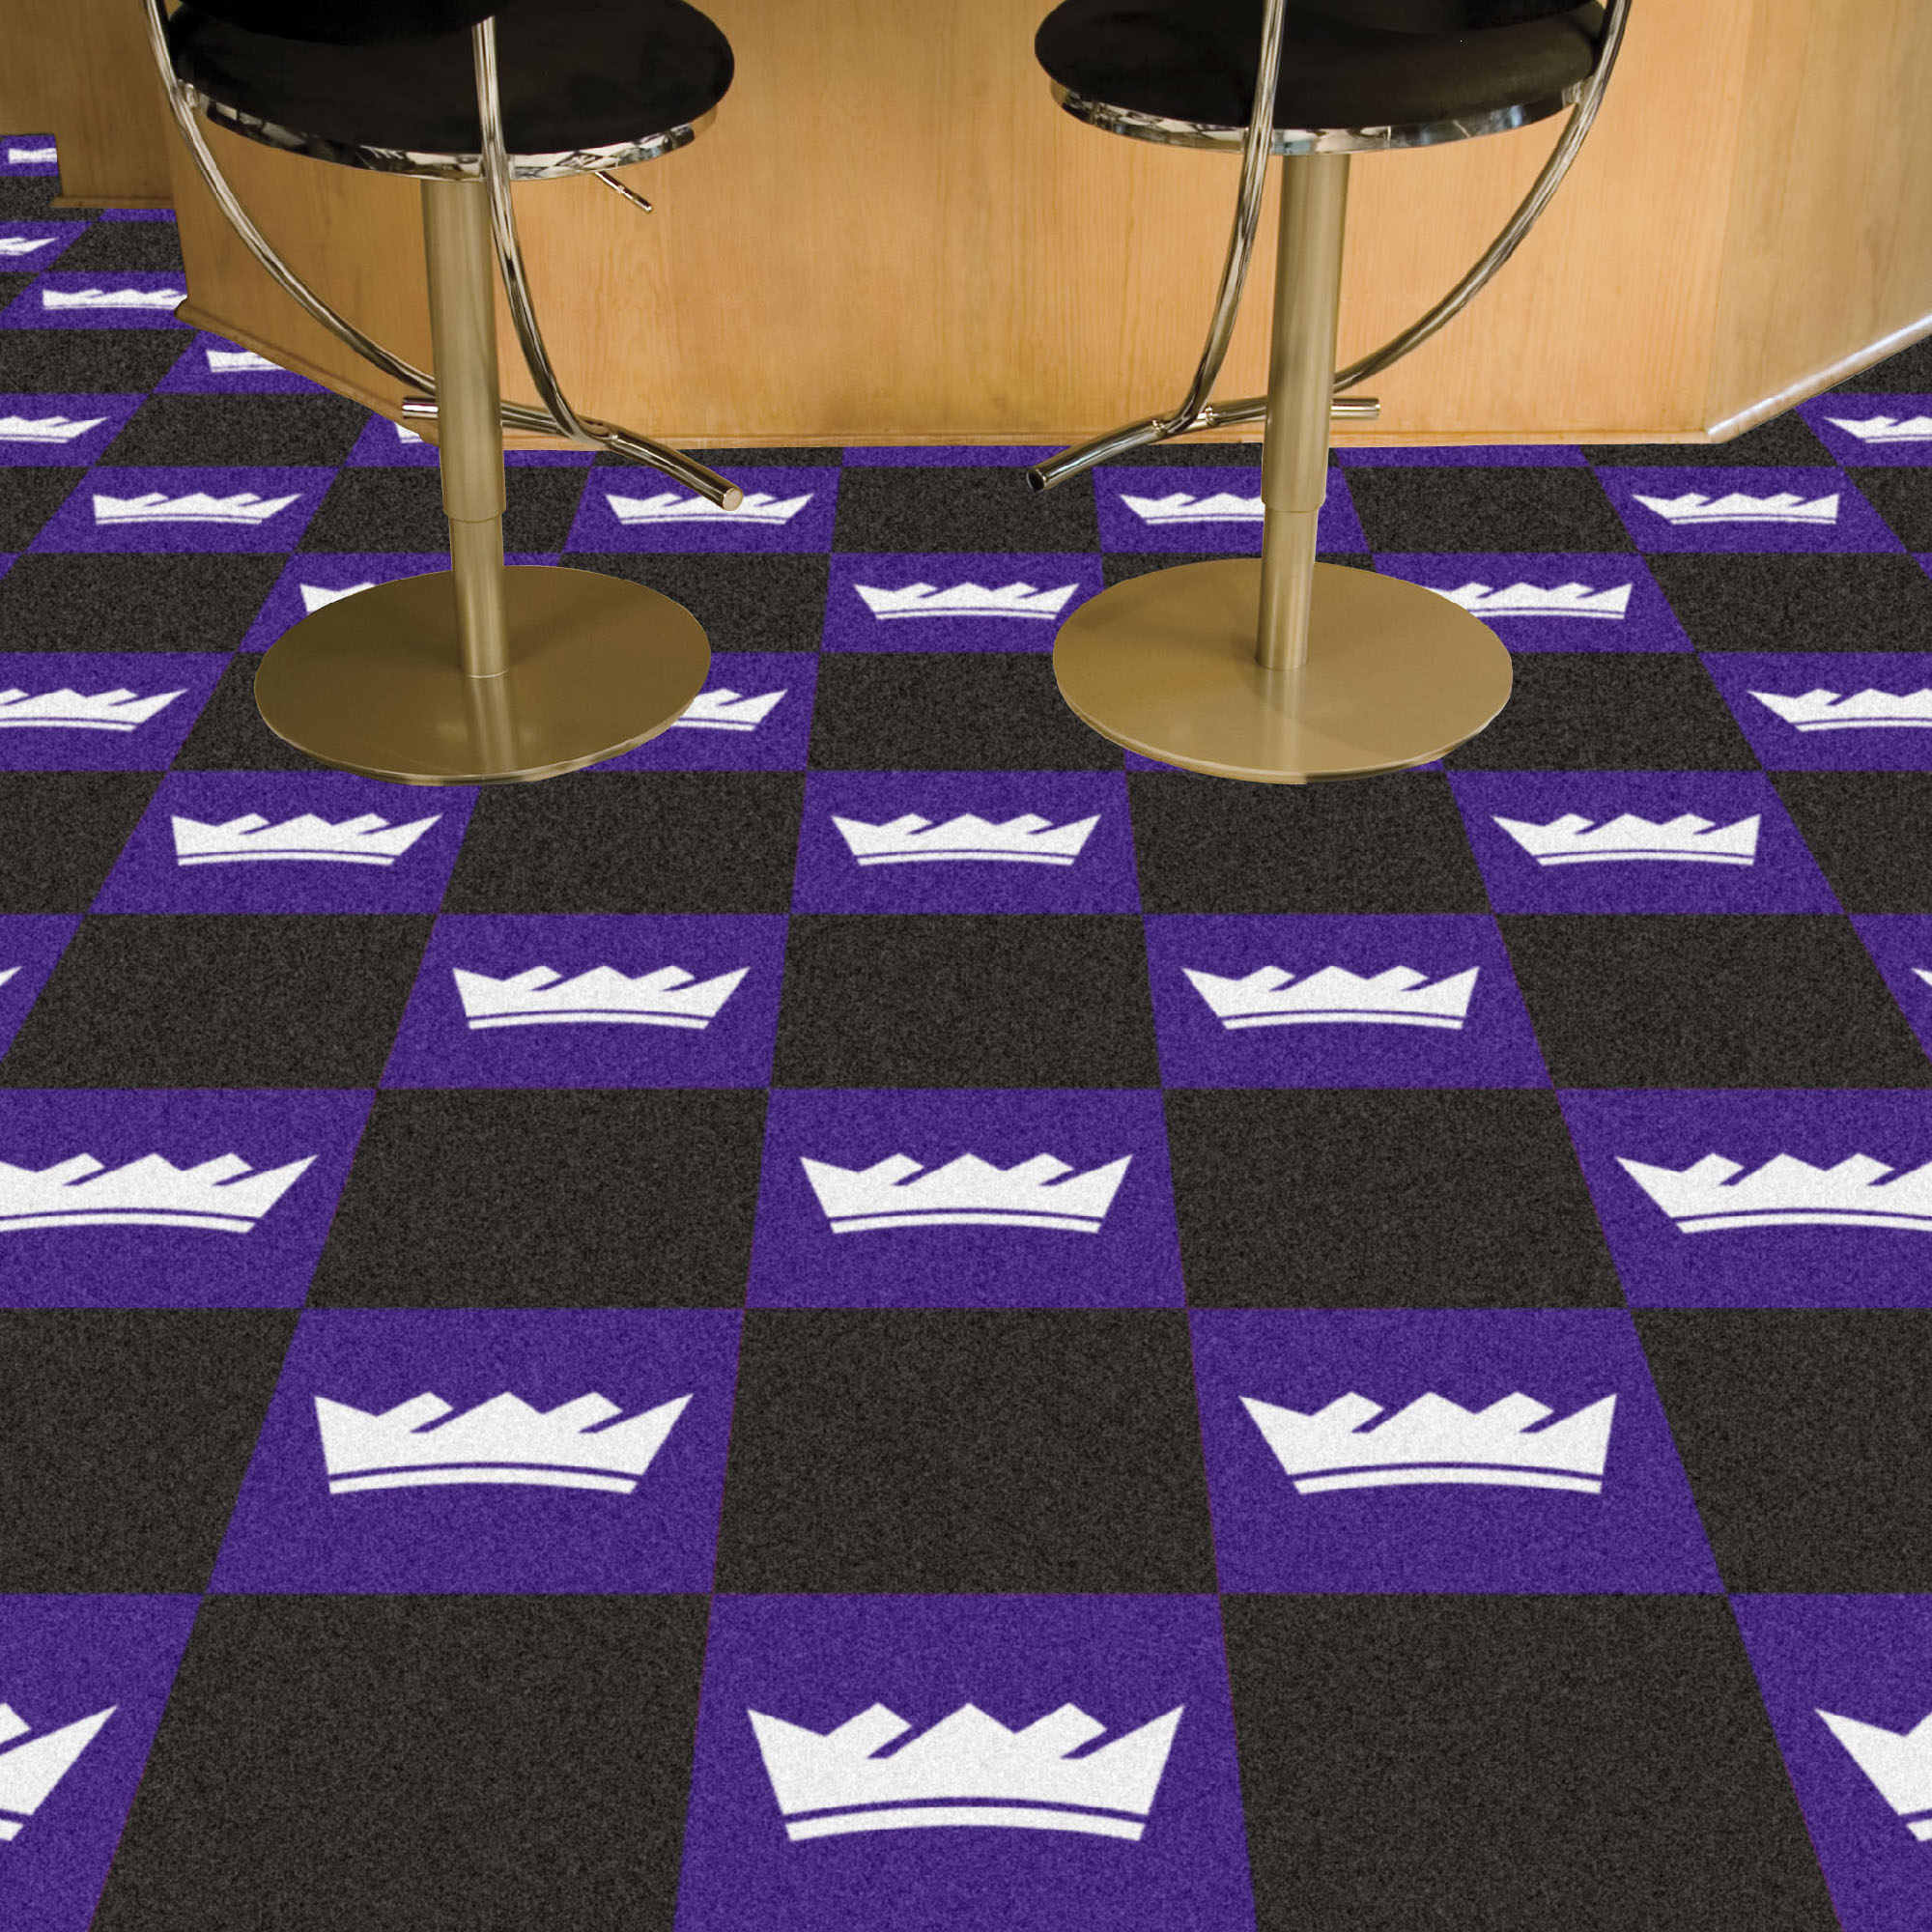 Kings Team Carpet Tiles - 45 sq ft